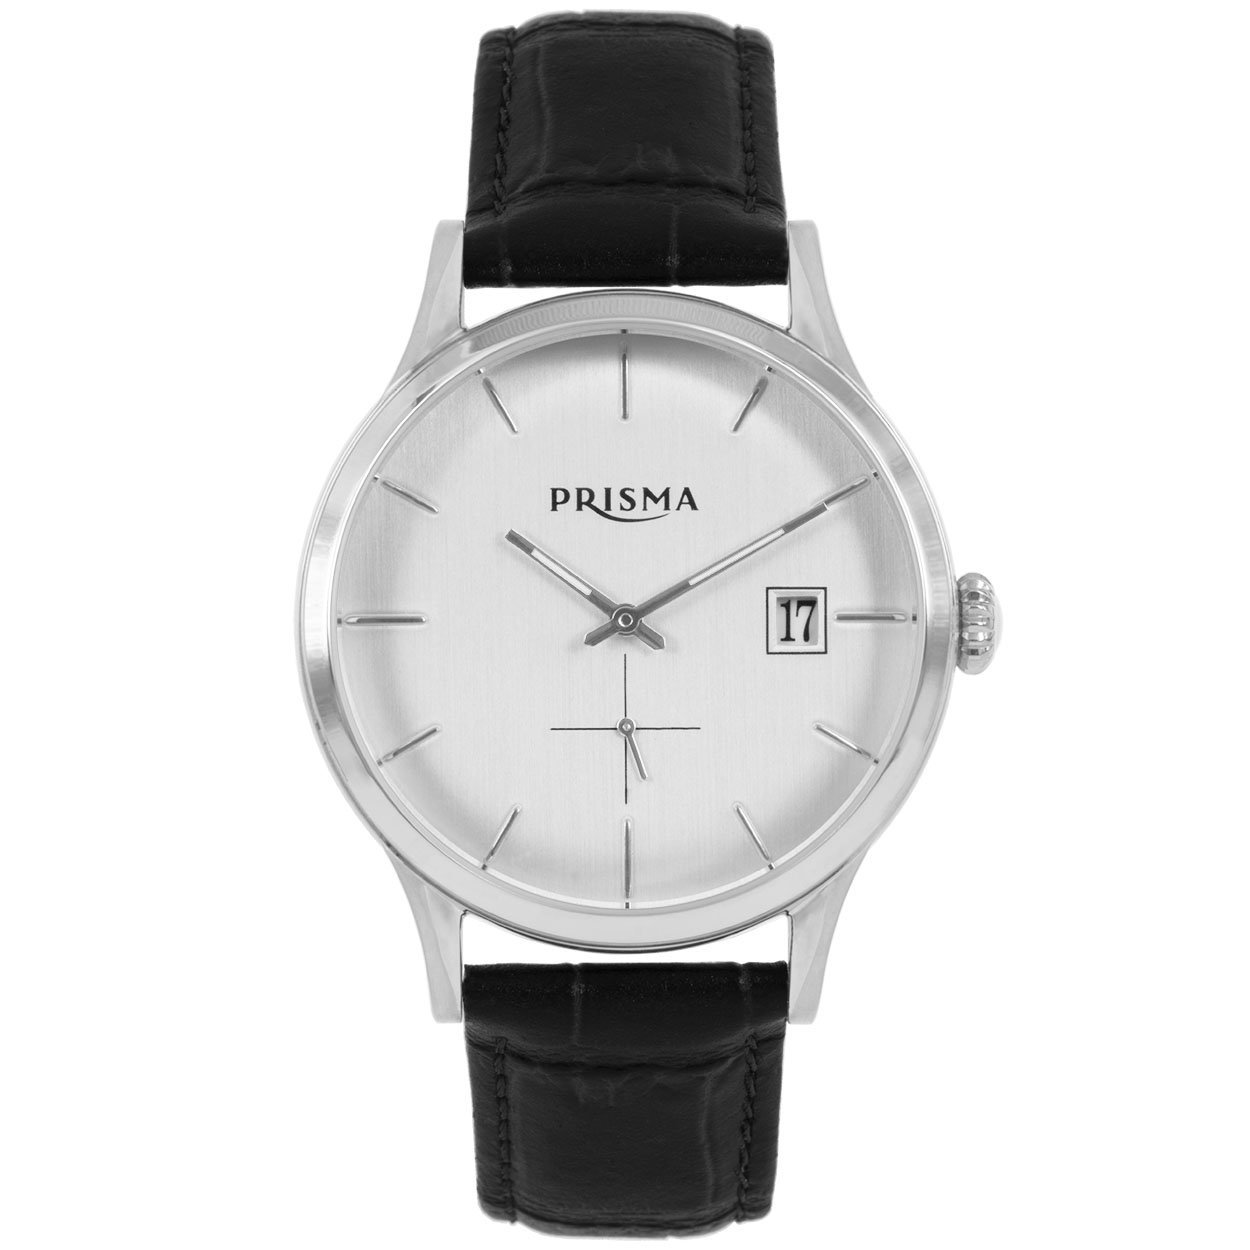 prisma-horloge-p-2772-621001-dutch-classics-50-s-excellentwebshop